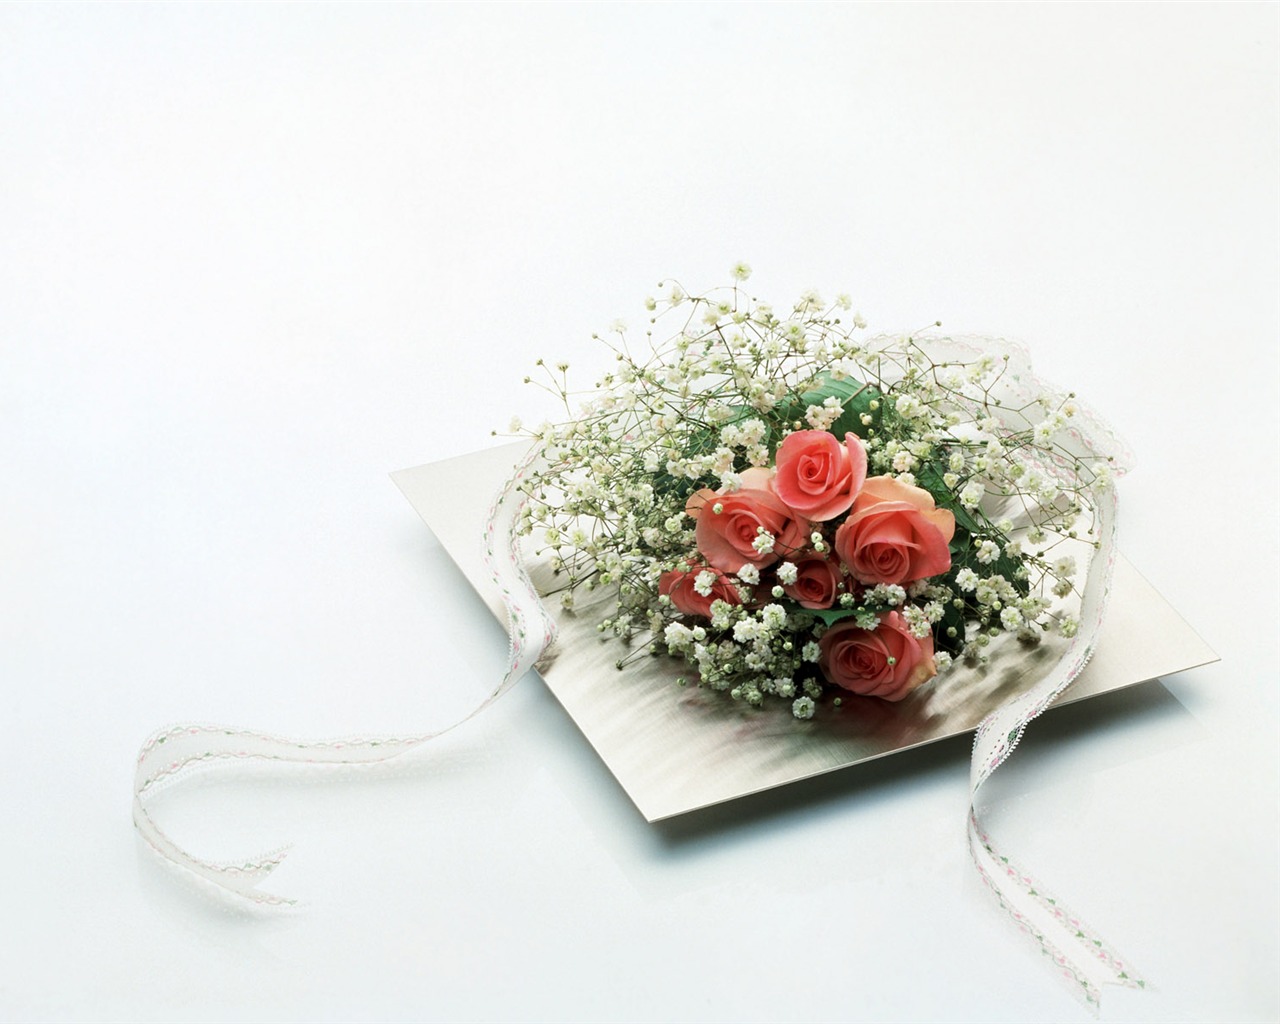 婚庆鲜花物品壁纸(二)3 - 1280x1024